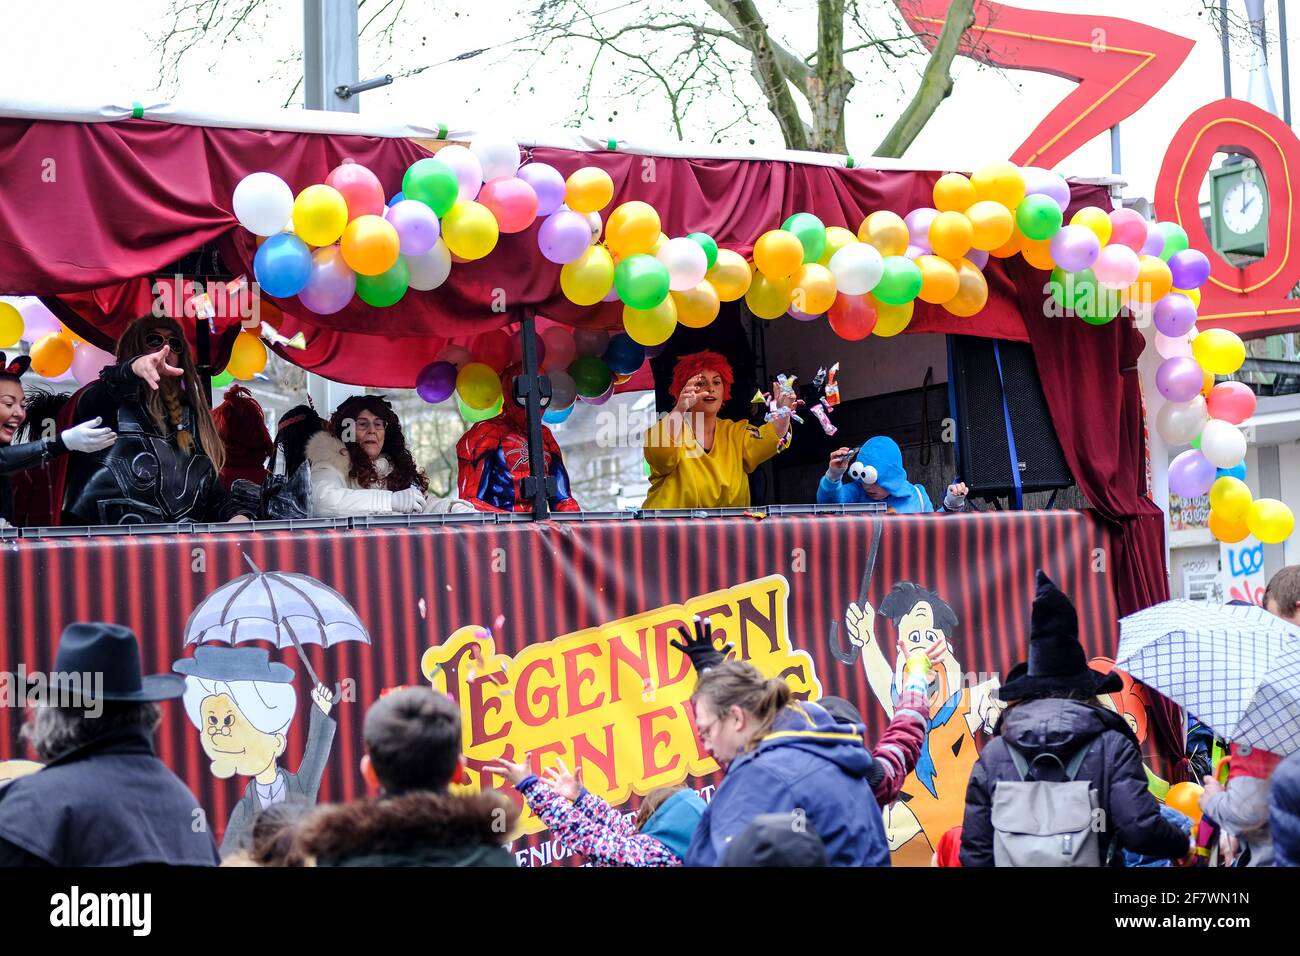 24.02.2020, Essen, Nordrhein-Westfalen, Deutschland - Strassenkarneval am Rosenmontag in Essen-Ruettenscheid am Ruettenscheider Markt Stock Photo